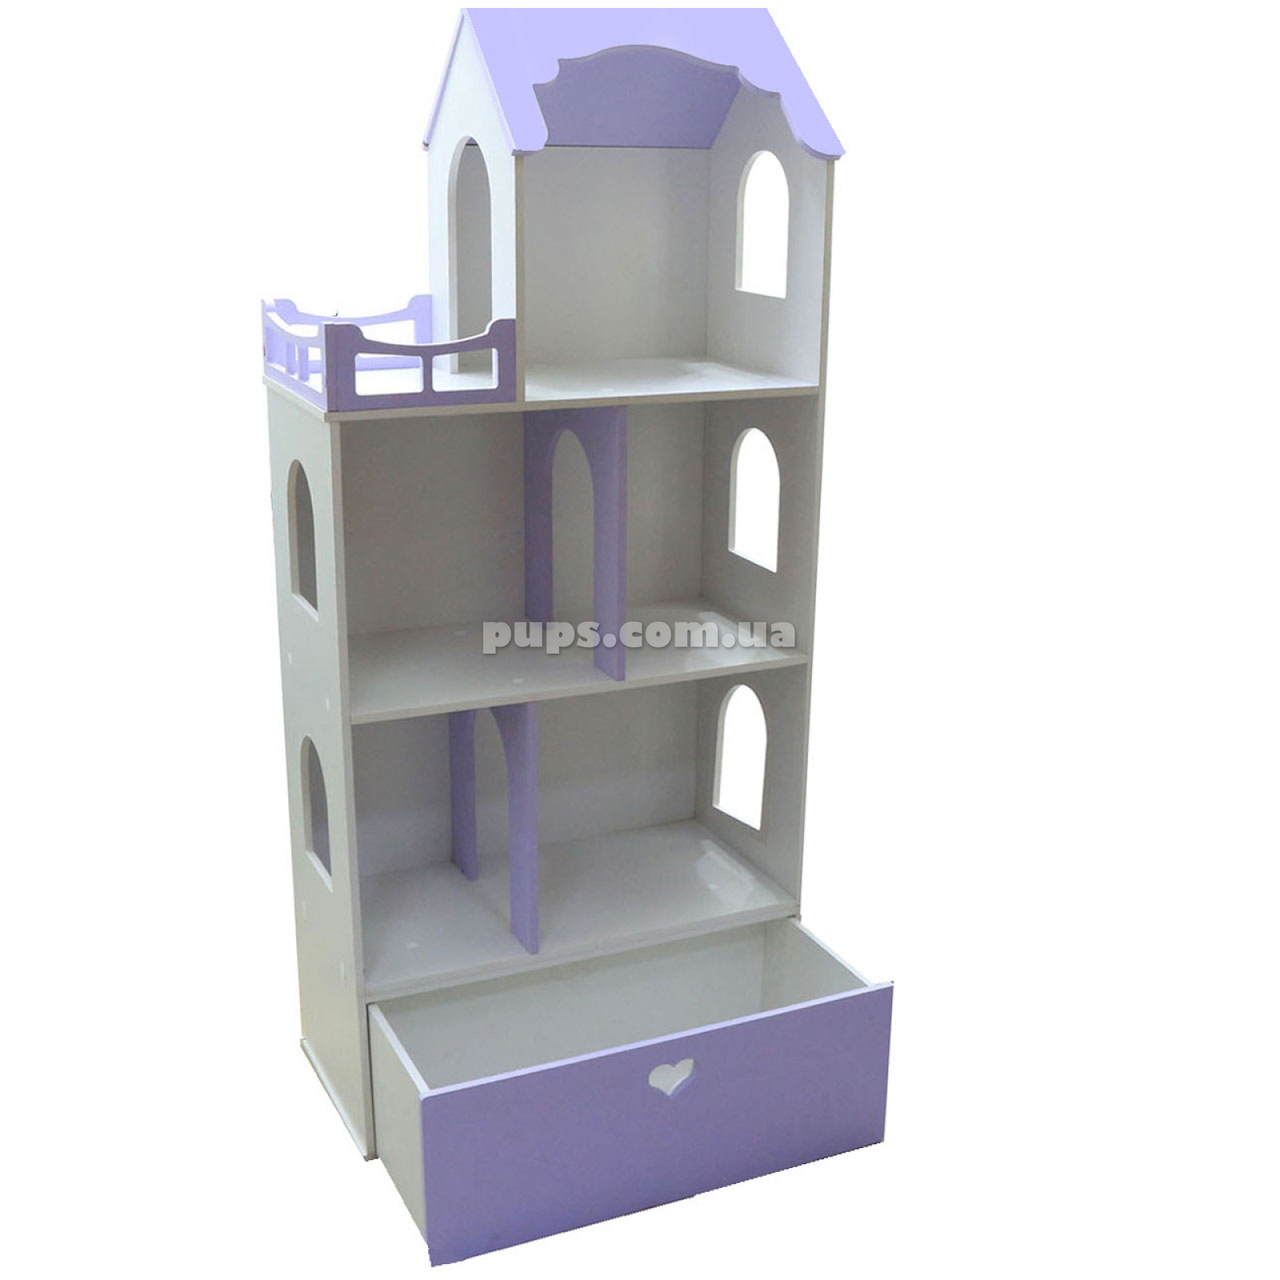 Игрушечный кукольный деревянный домик с ящиком для игрушек Unitywood фиолетовый. Обустройте домик для кукол